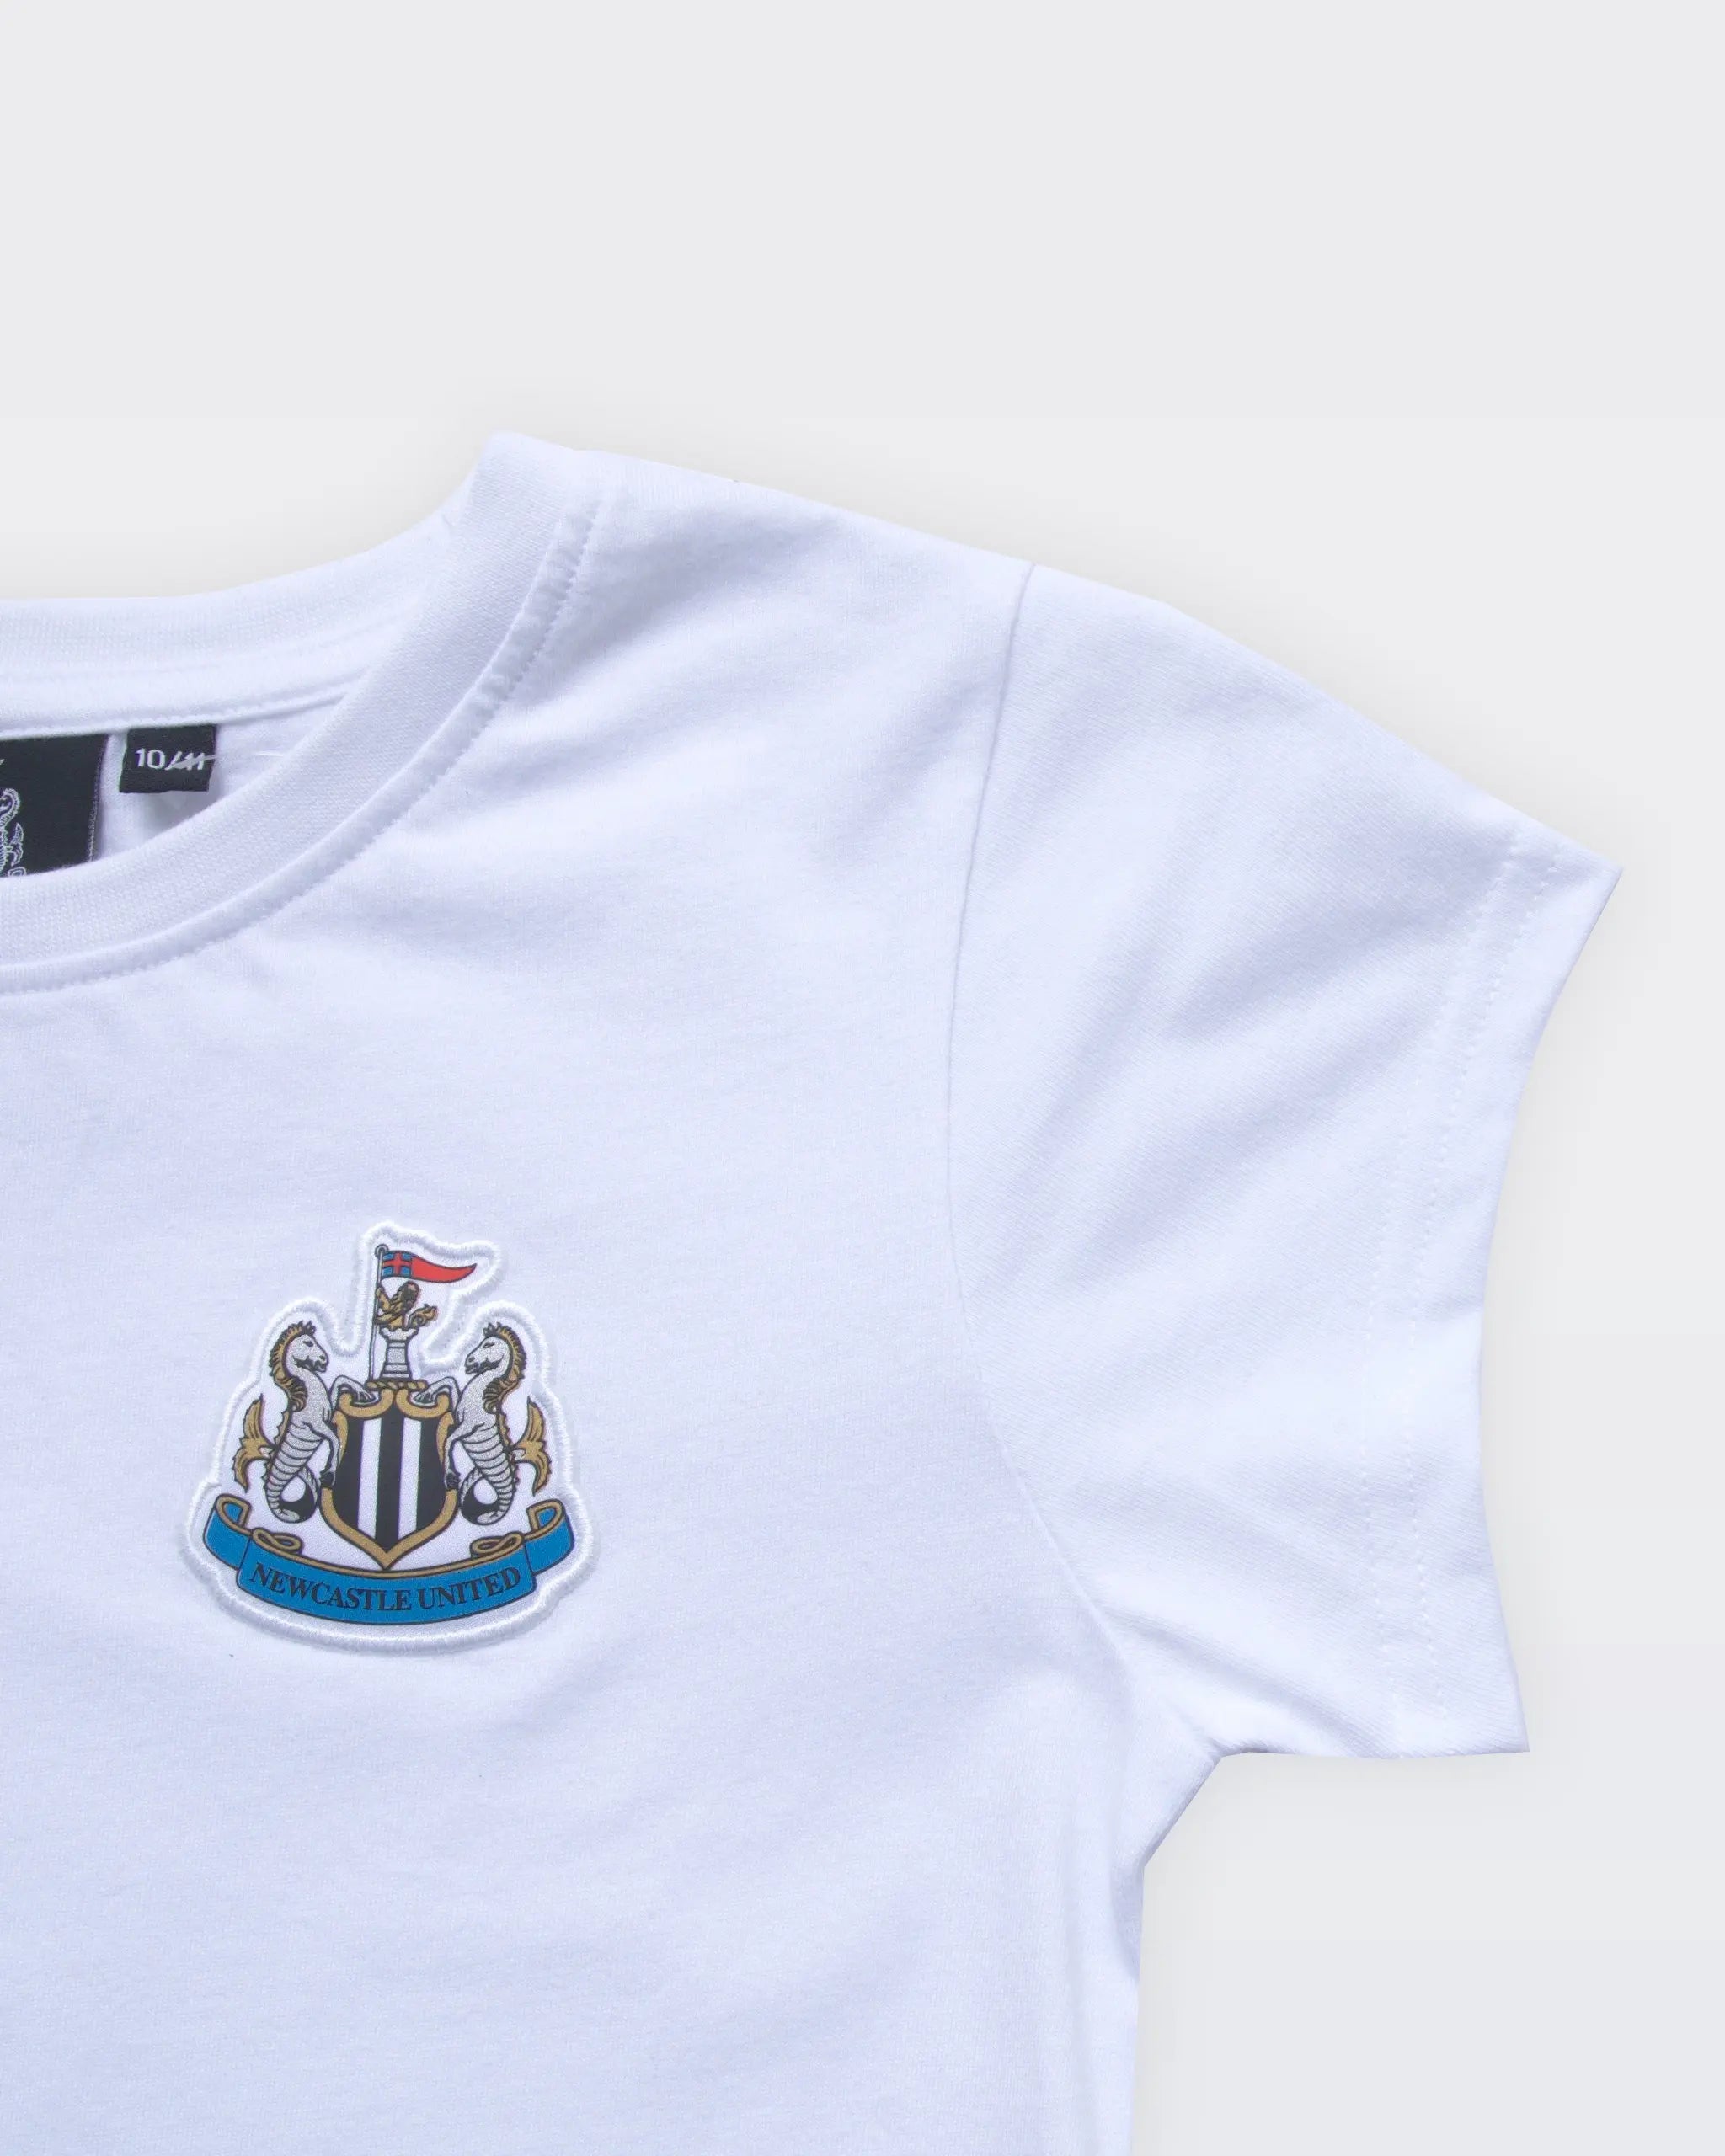 Newcastle United Girl's White Terrace Crest T-Shirt